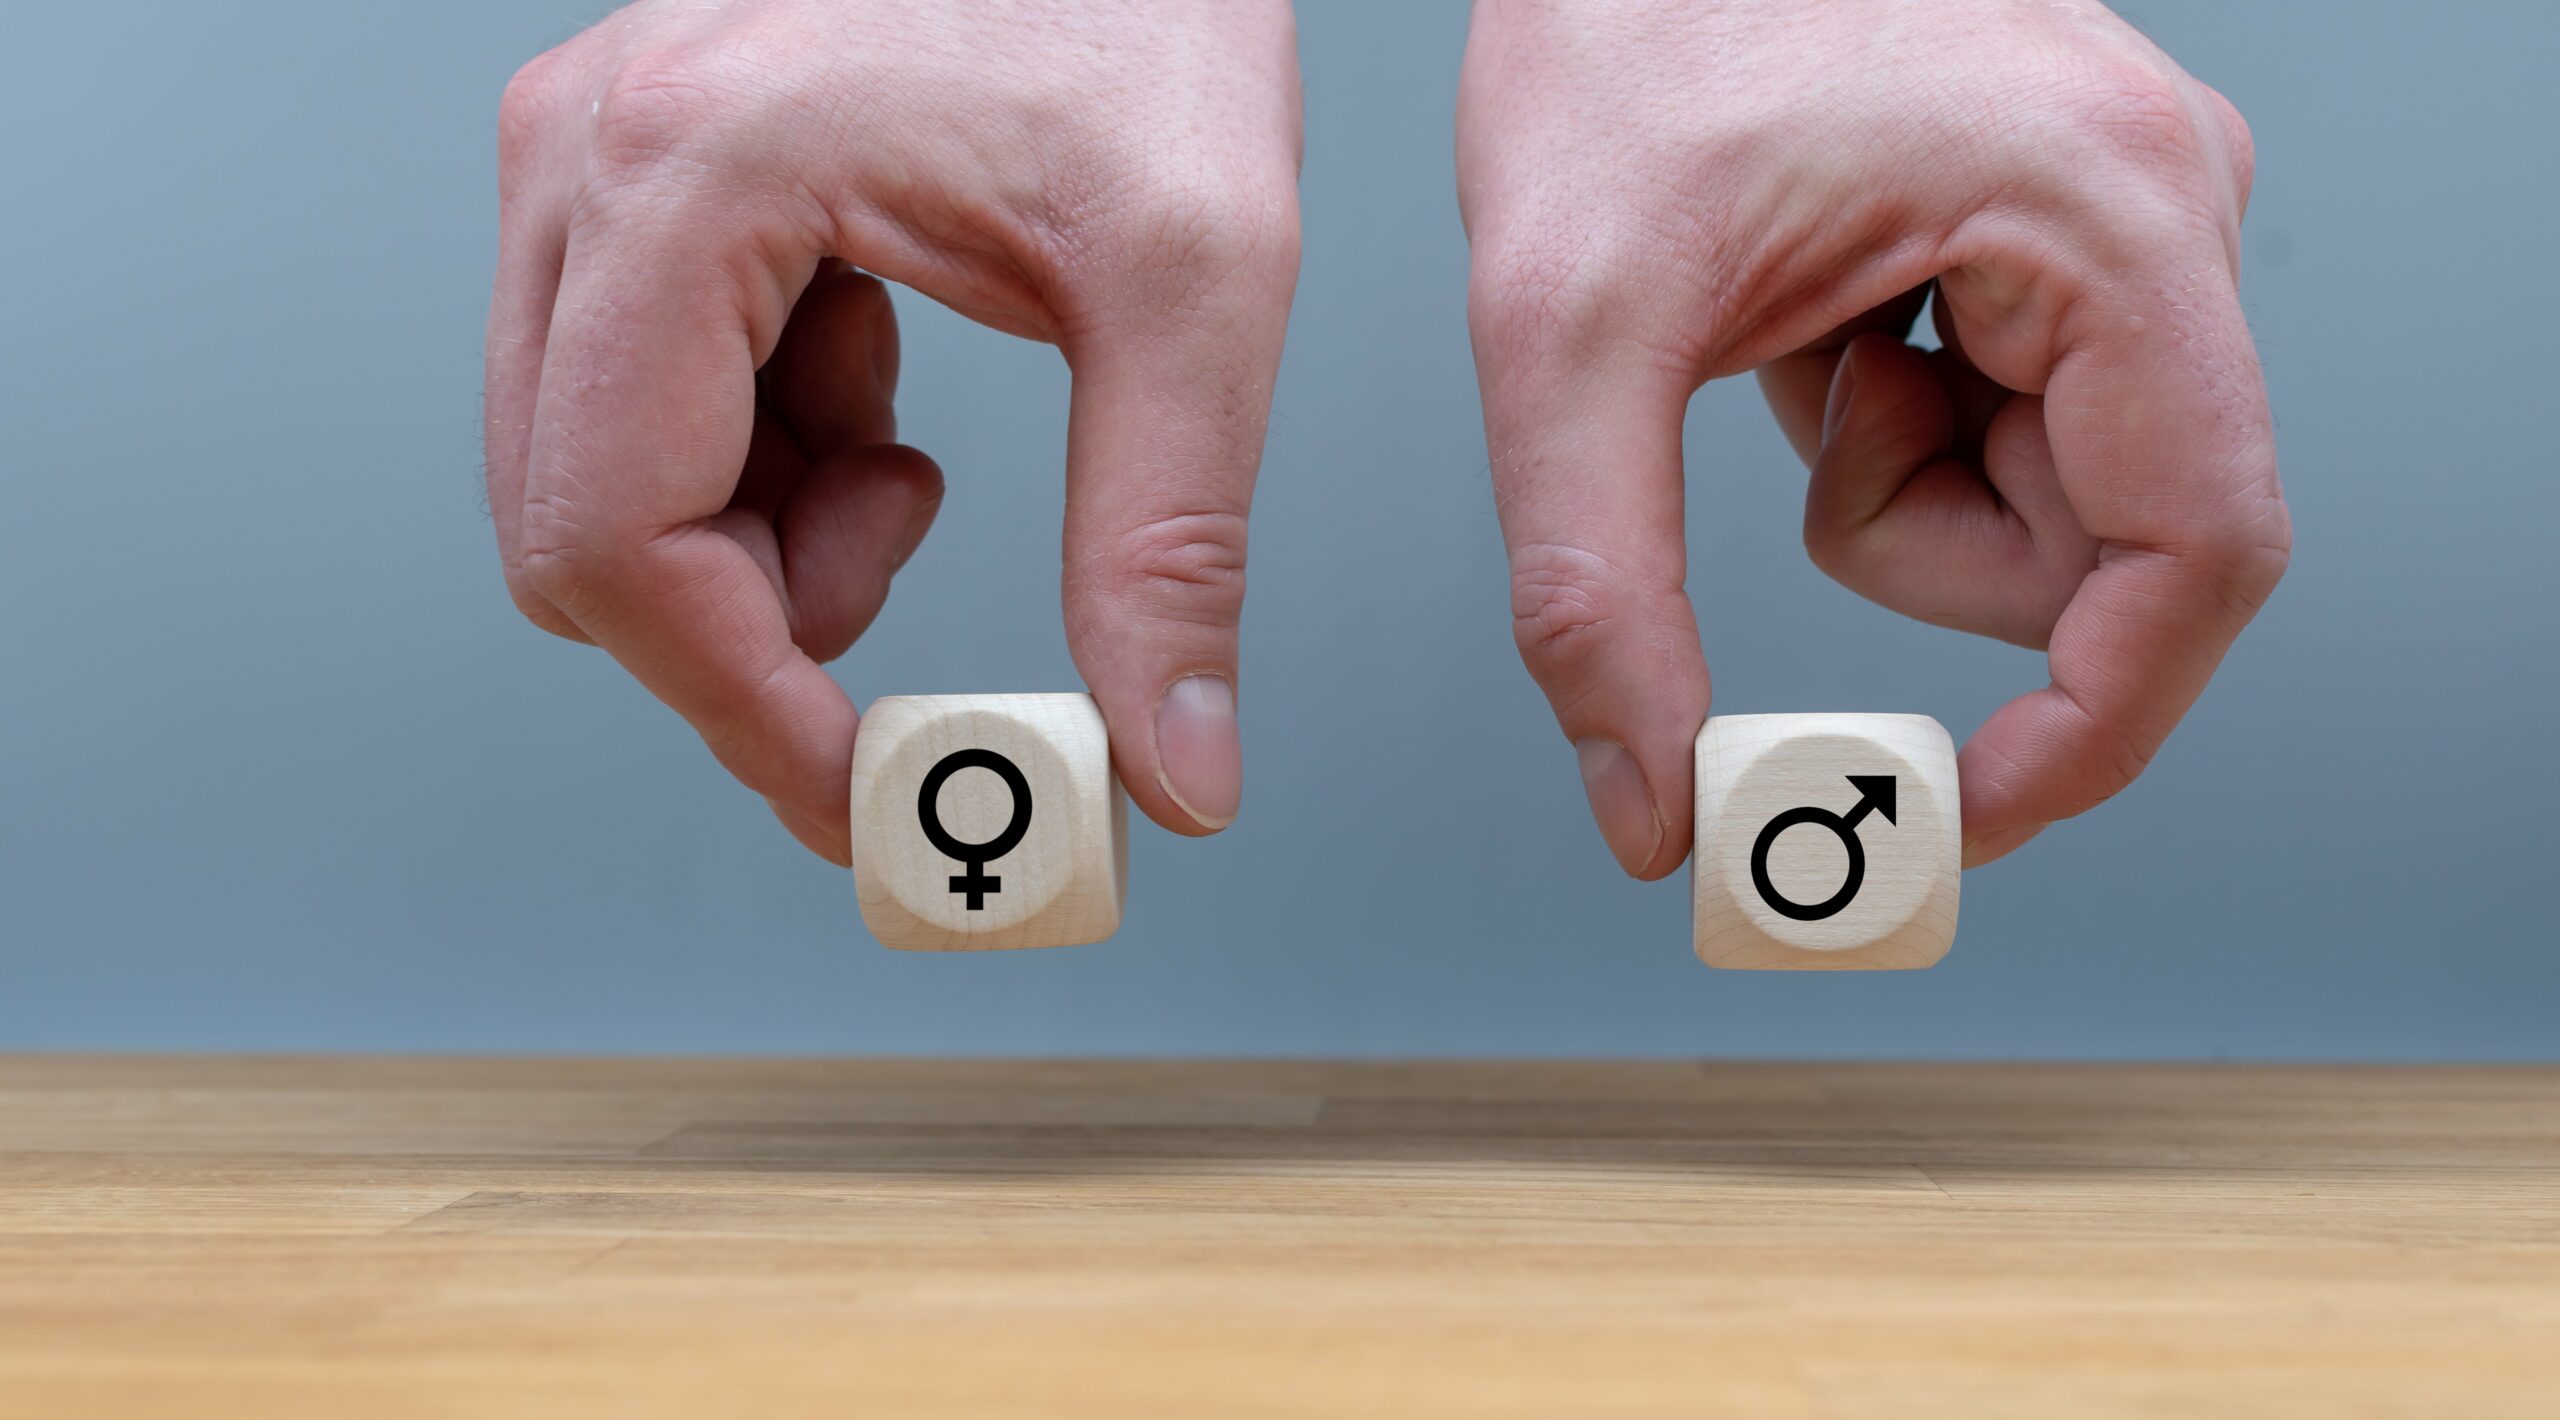 Symbol für Gleichberechtigung zwischen Männern und Frauen. Hände halten zwei Würfel in gleicher Höhe mit den Symbolen für Mann und Frau.